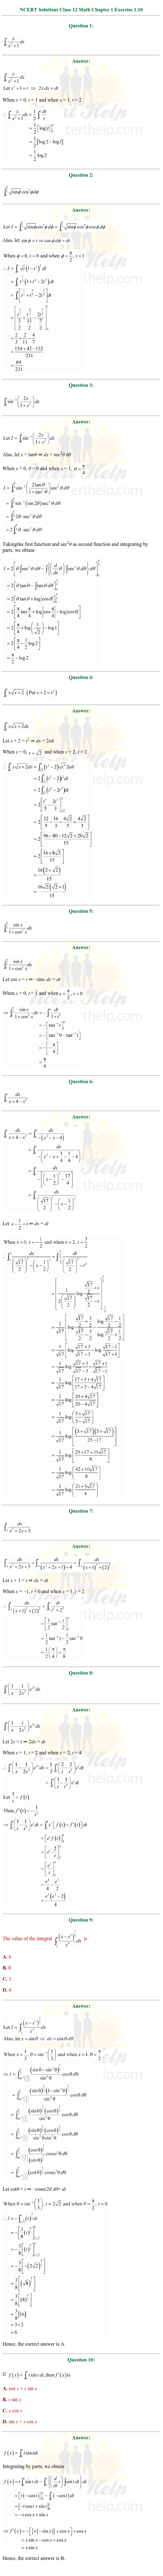 ex.7.10 Class 12 Math Chapter 7 ncert solutions